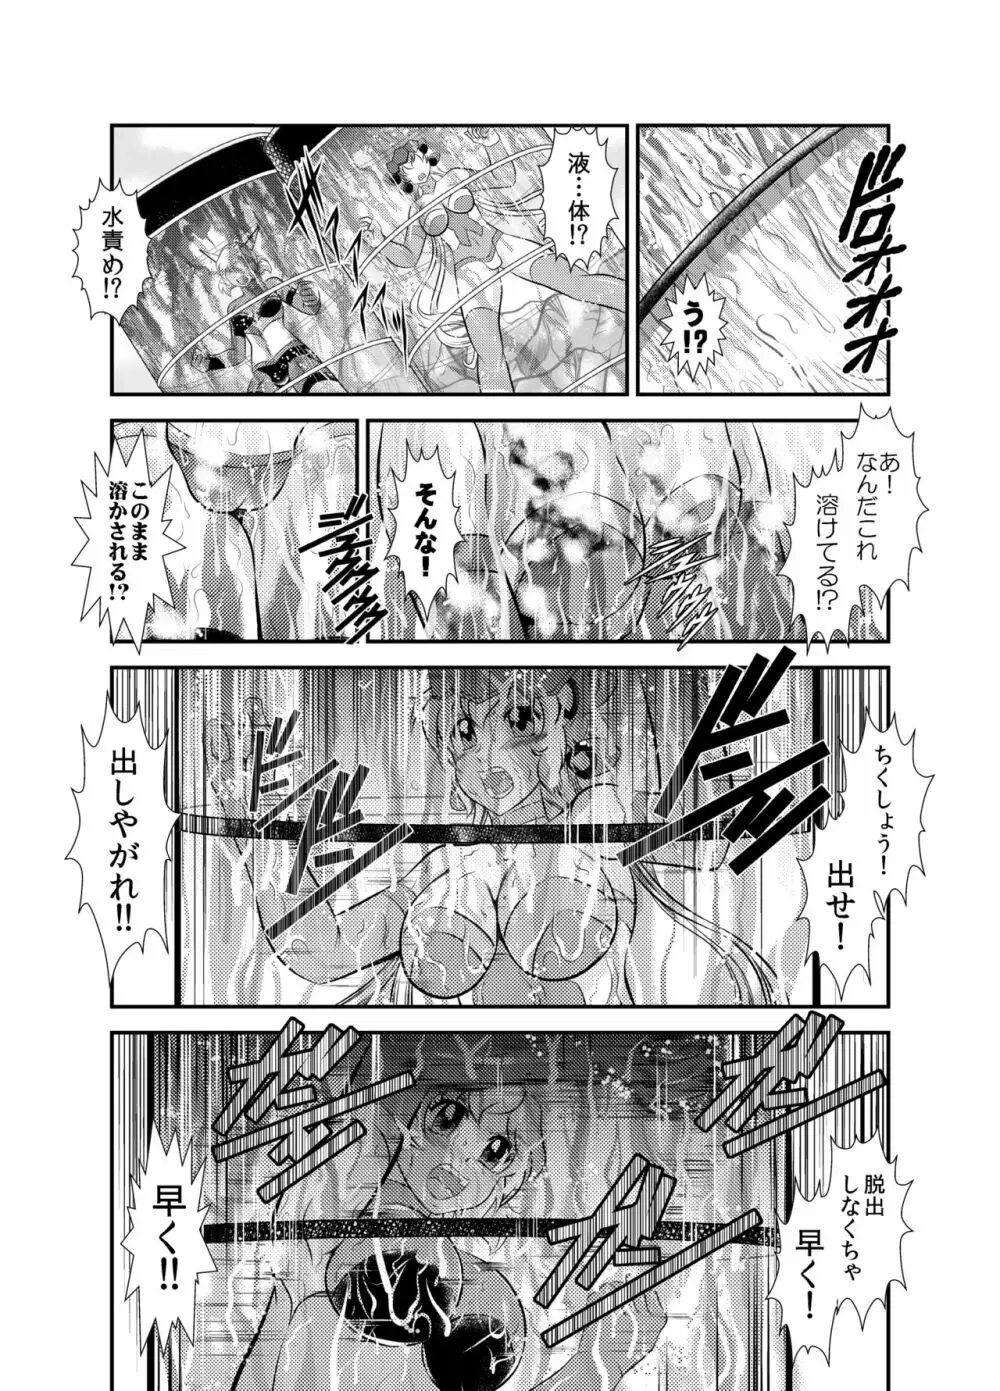 戦姫全滅 EP2:立花響&雪音クリス - page11